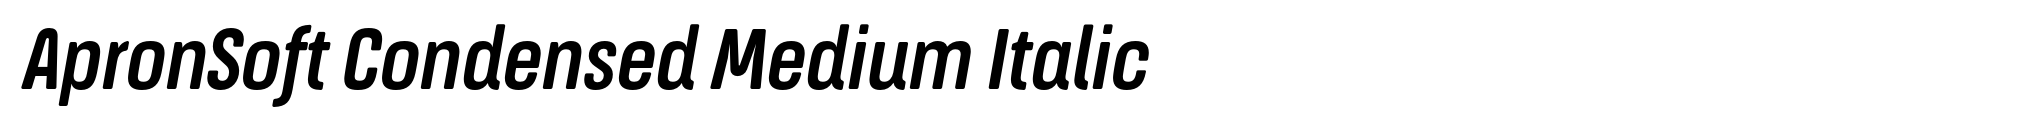 ApronSoft Condensed Medium Italic image